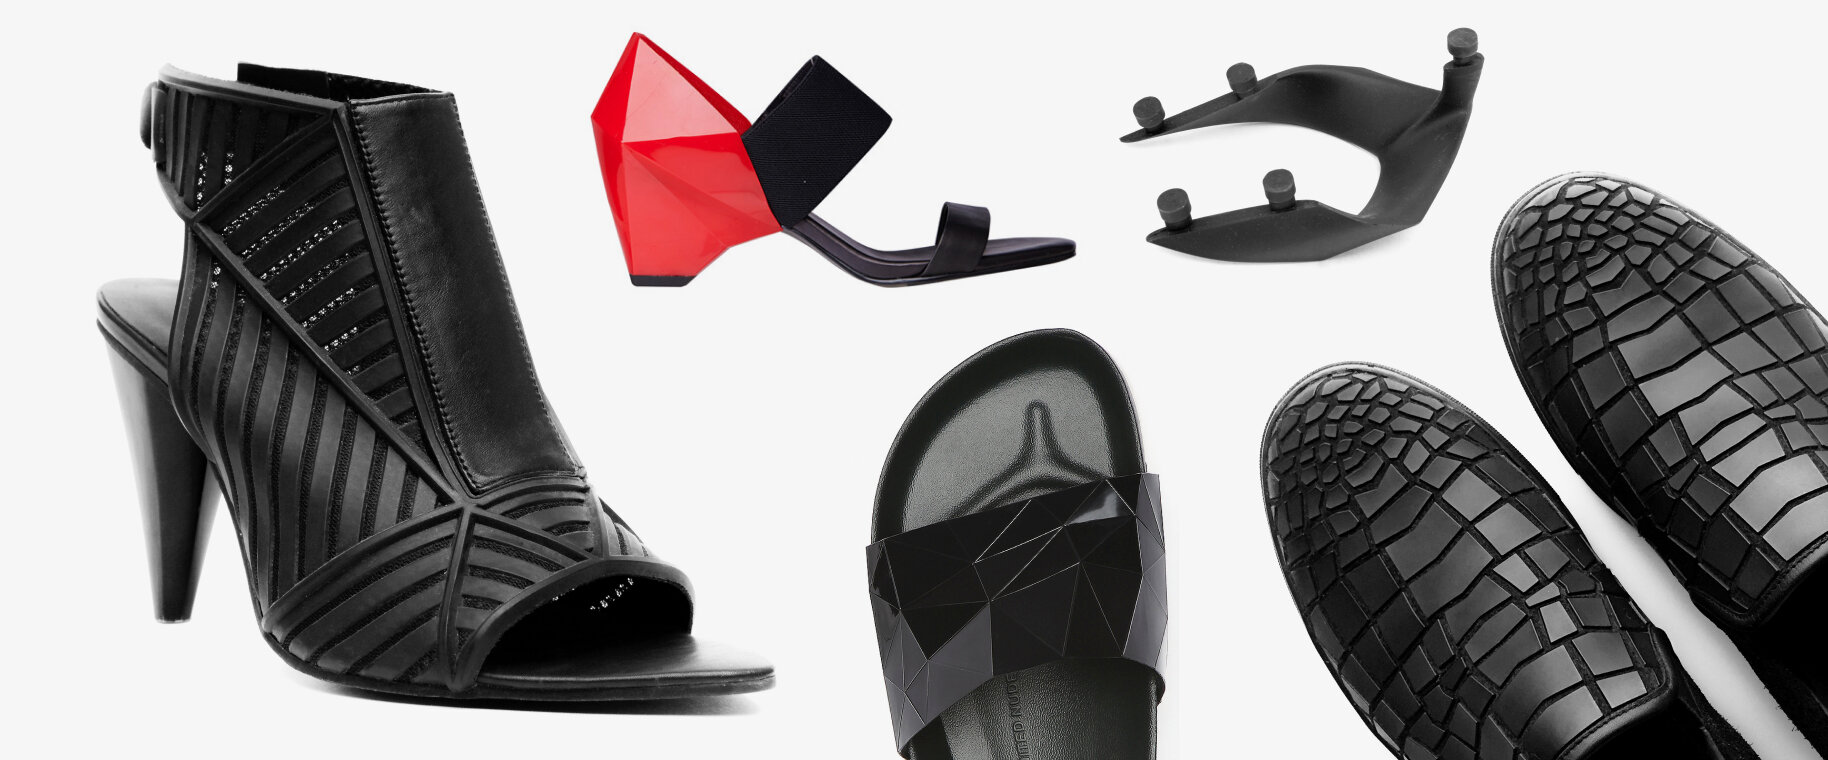 footwear-innovation-projects-11A.jpg